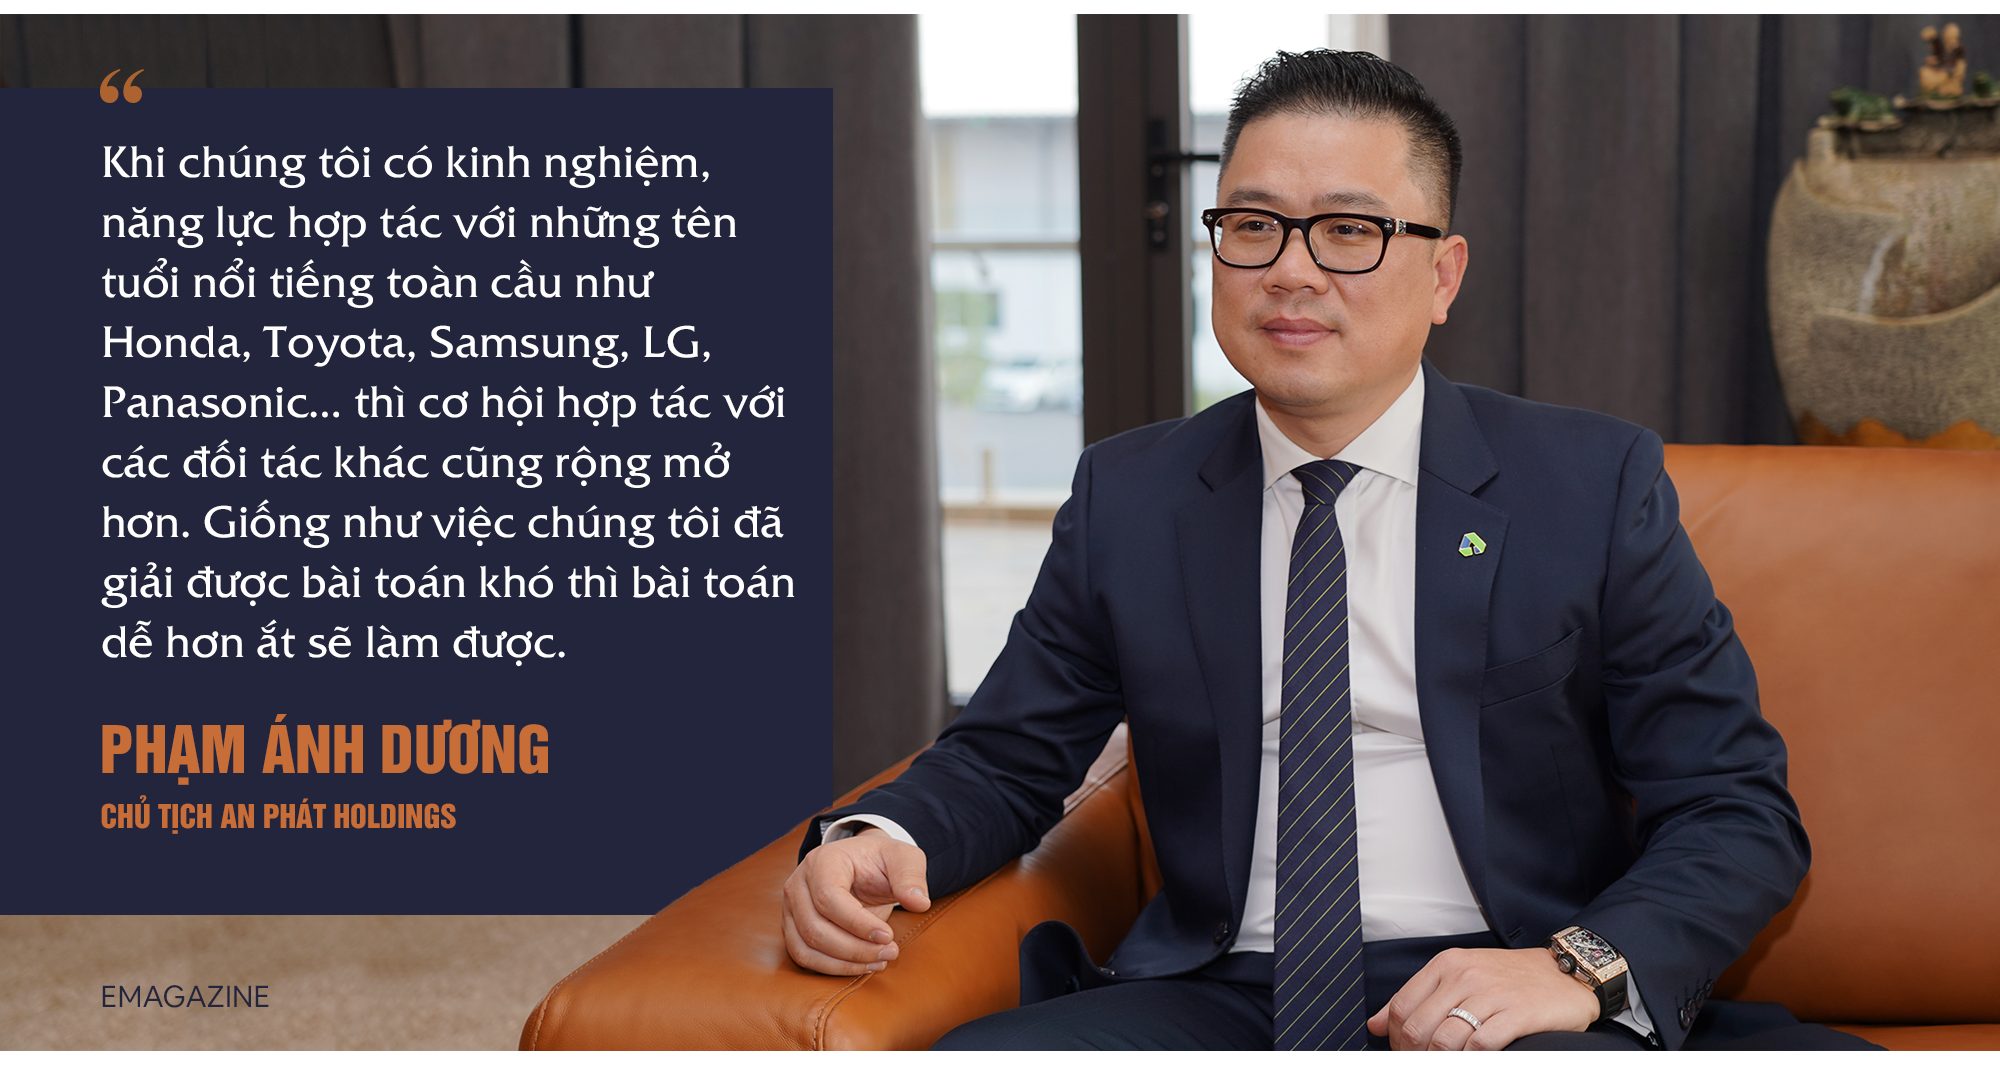 Chủ tịch An Phát Holdings Phạm Ánh Dương: Chúng tôi sẽ trở thành Tập đoàn nhựa sinh học lớn nhất Đông Nam Á - Ảnh 5.